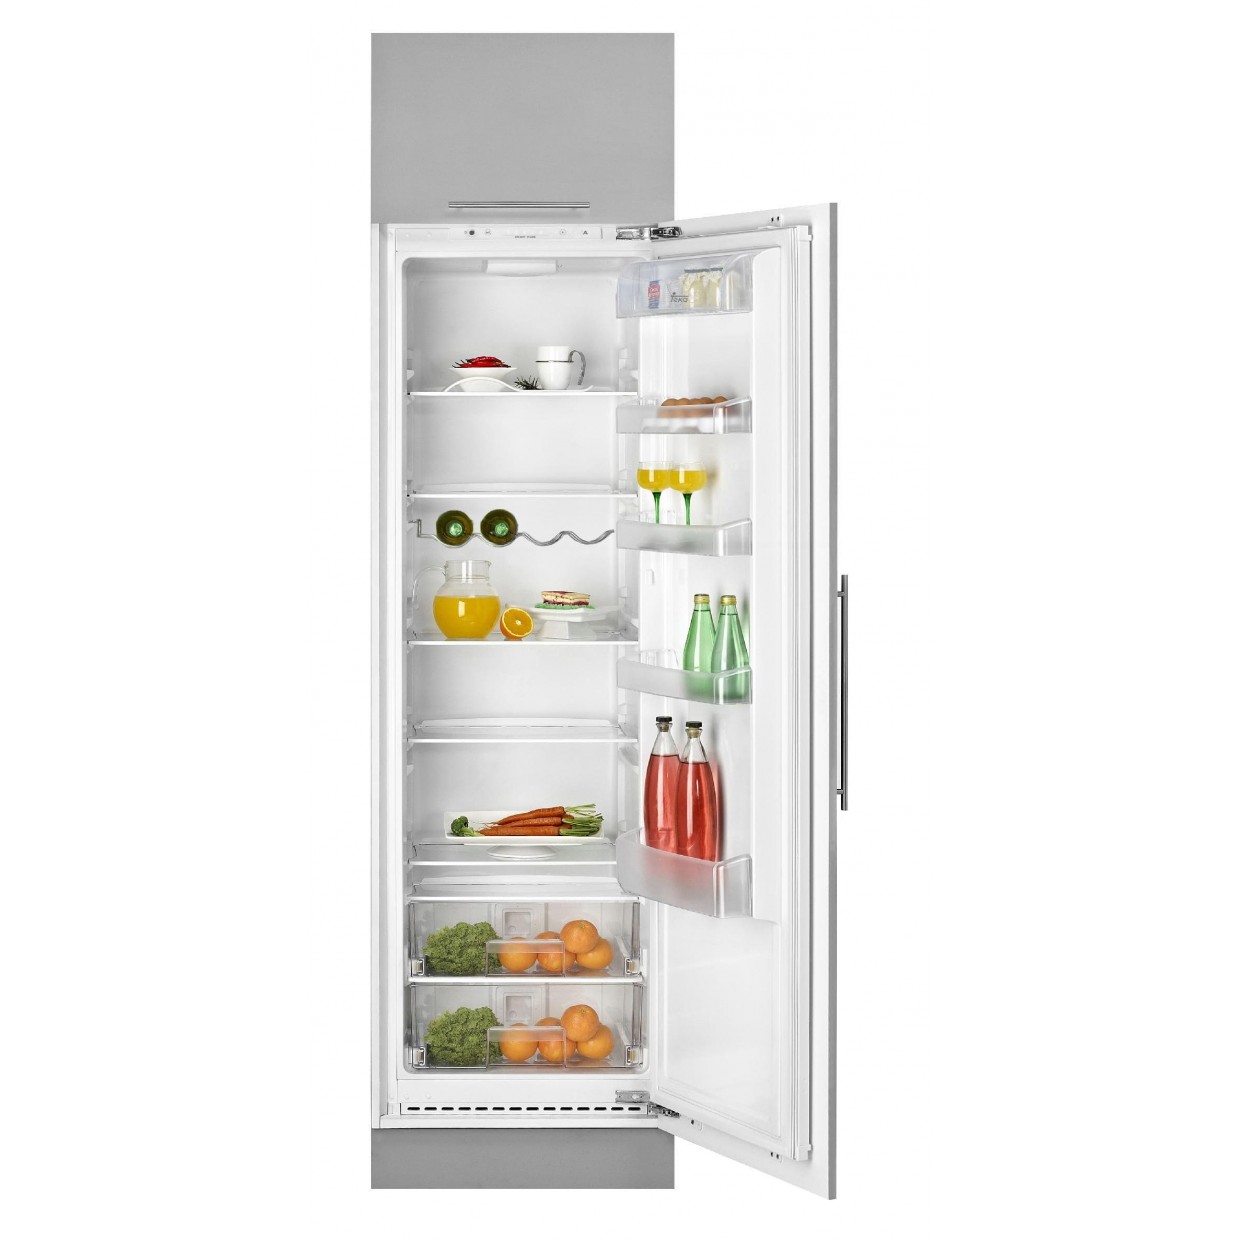 Встраиваемые холодильники ру